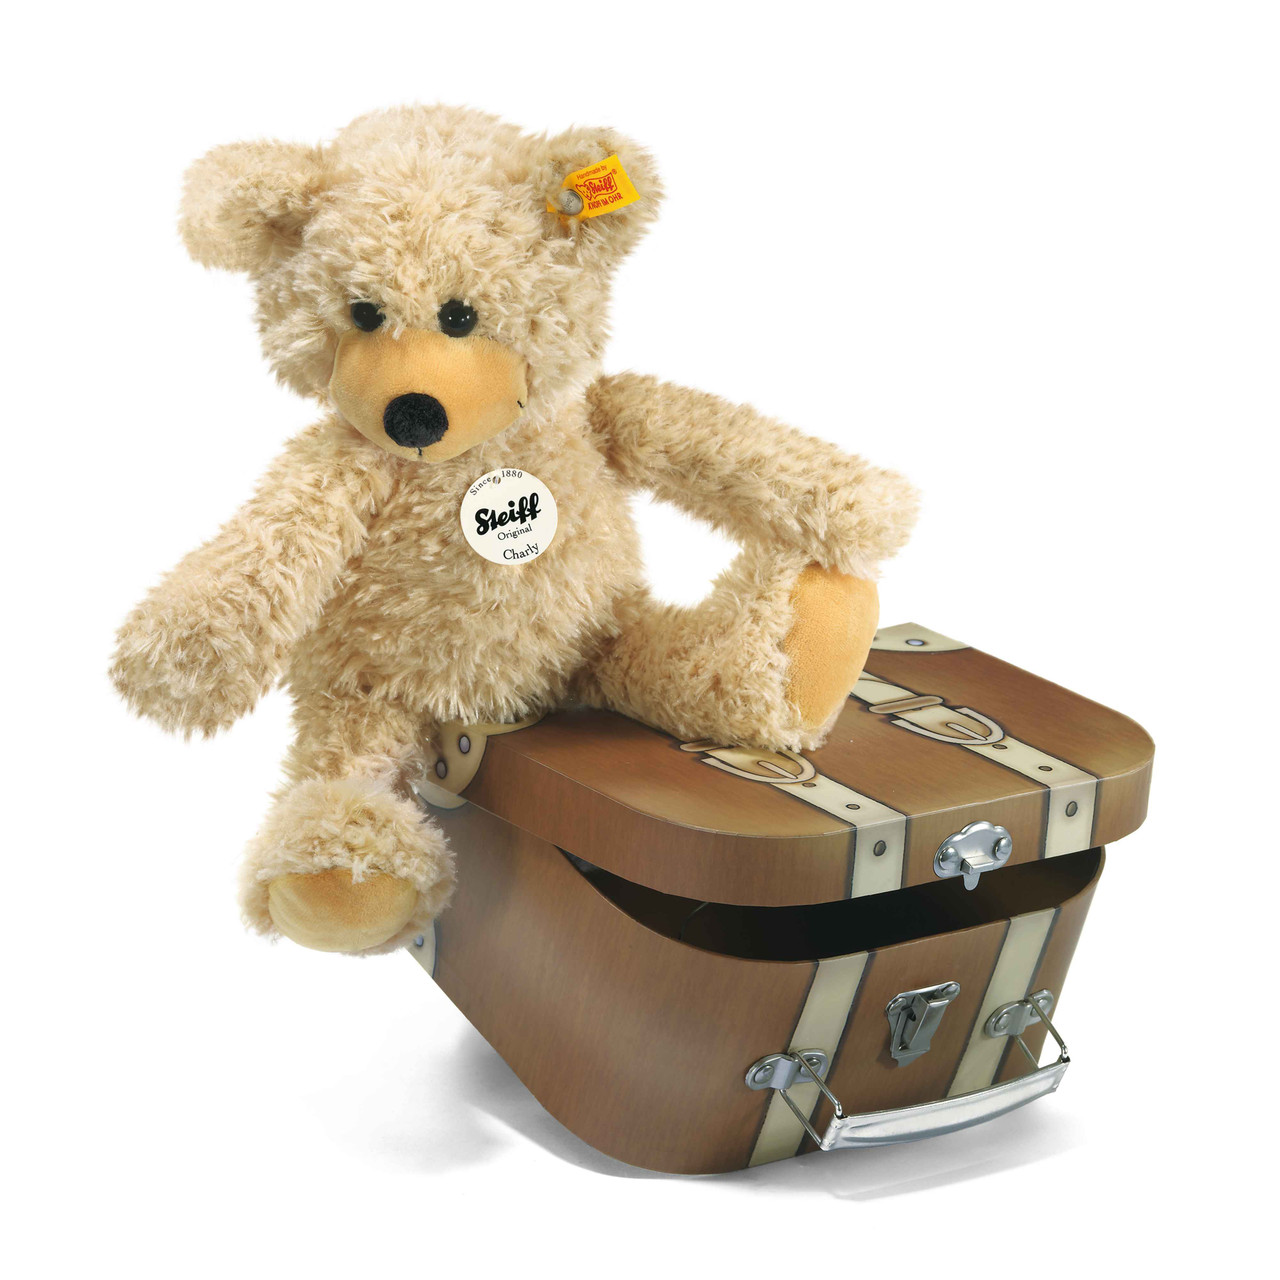 steiff lotte teddy bear in suitcase